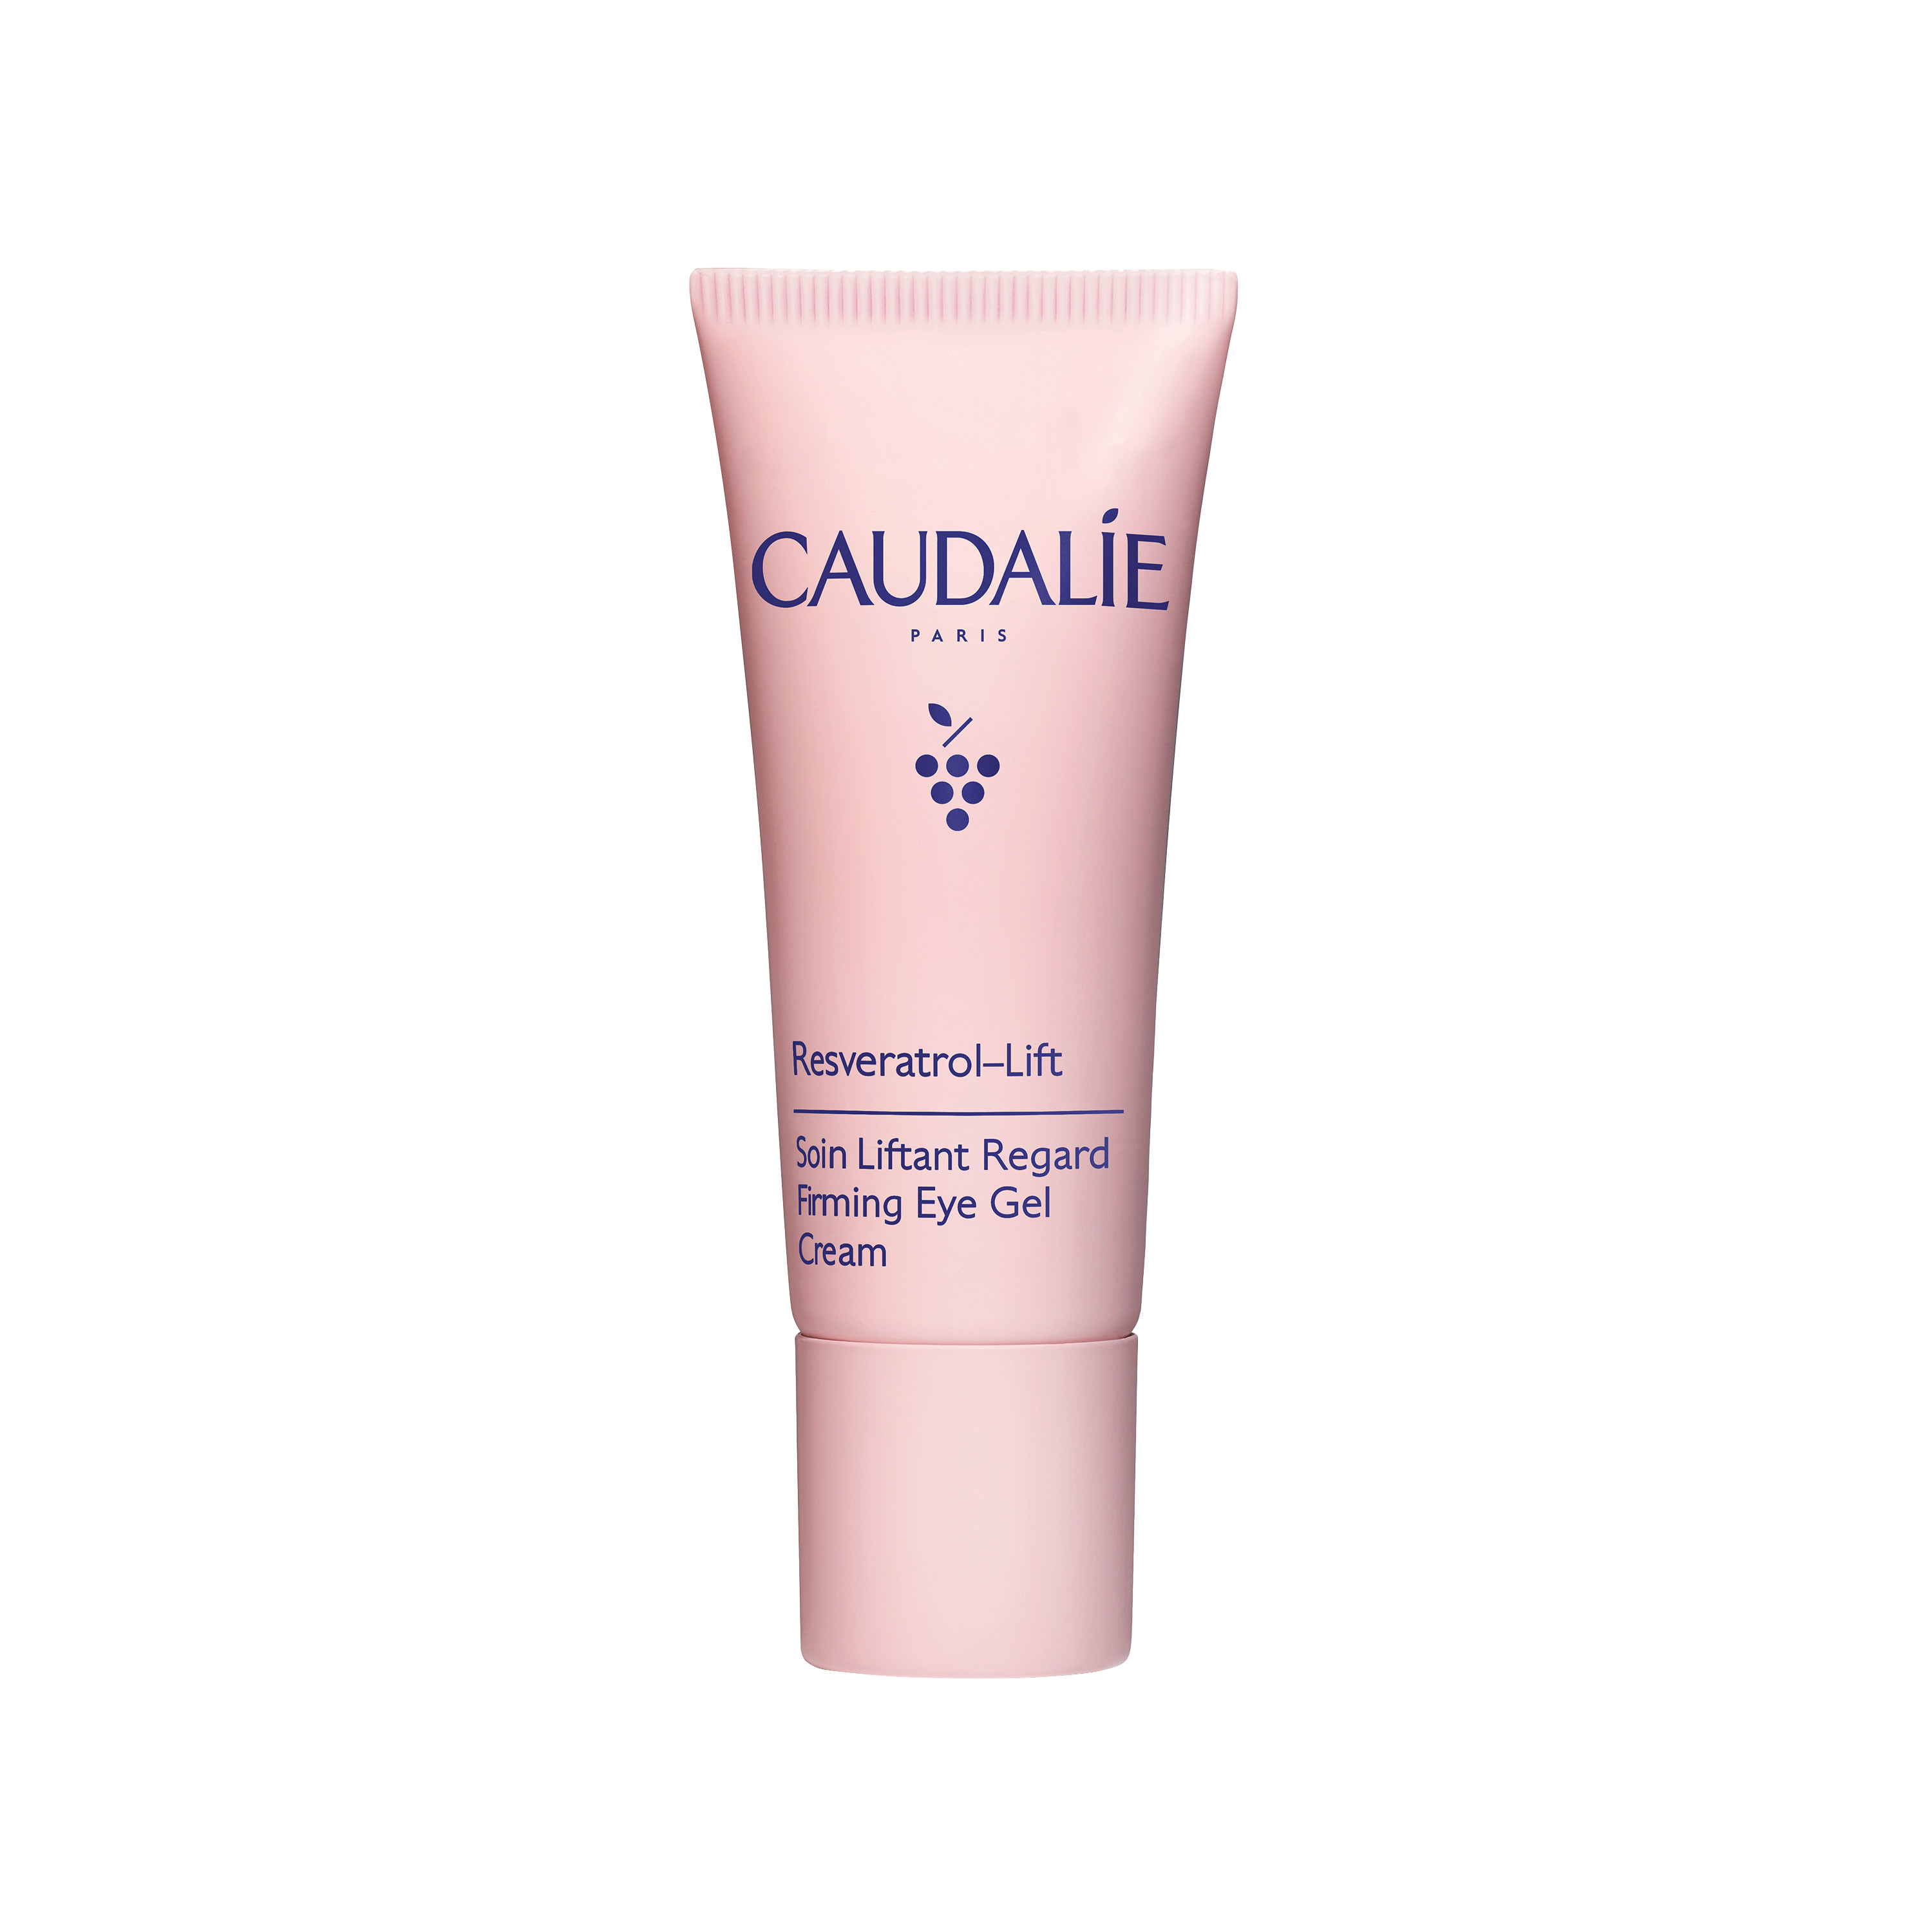 Caudalie Resveratrol-Lift Firming Eye Gel Cream Αντιρυτιδική Κρέμα-Τζελ Ματιών & Ανόρθωση Βλεφάρων, 15ml